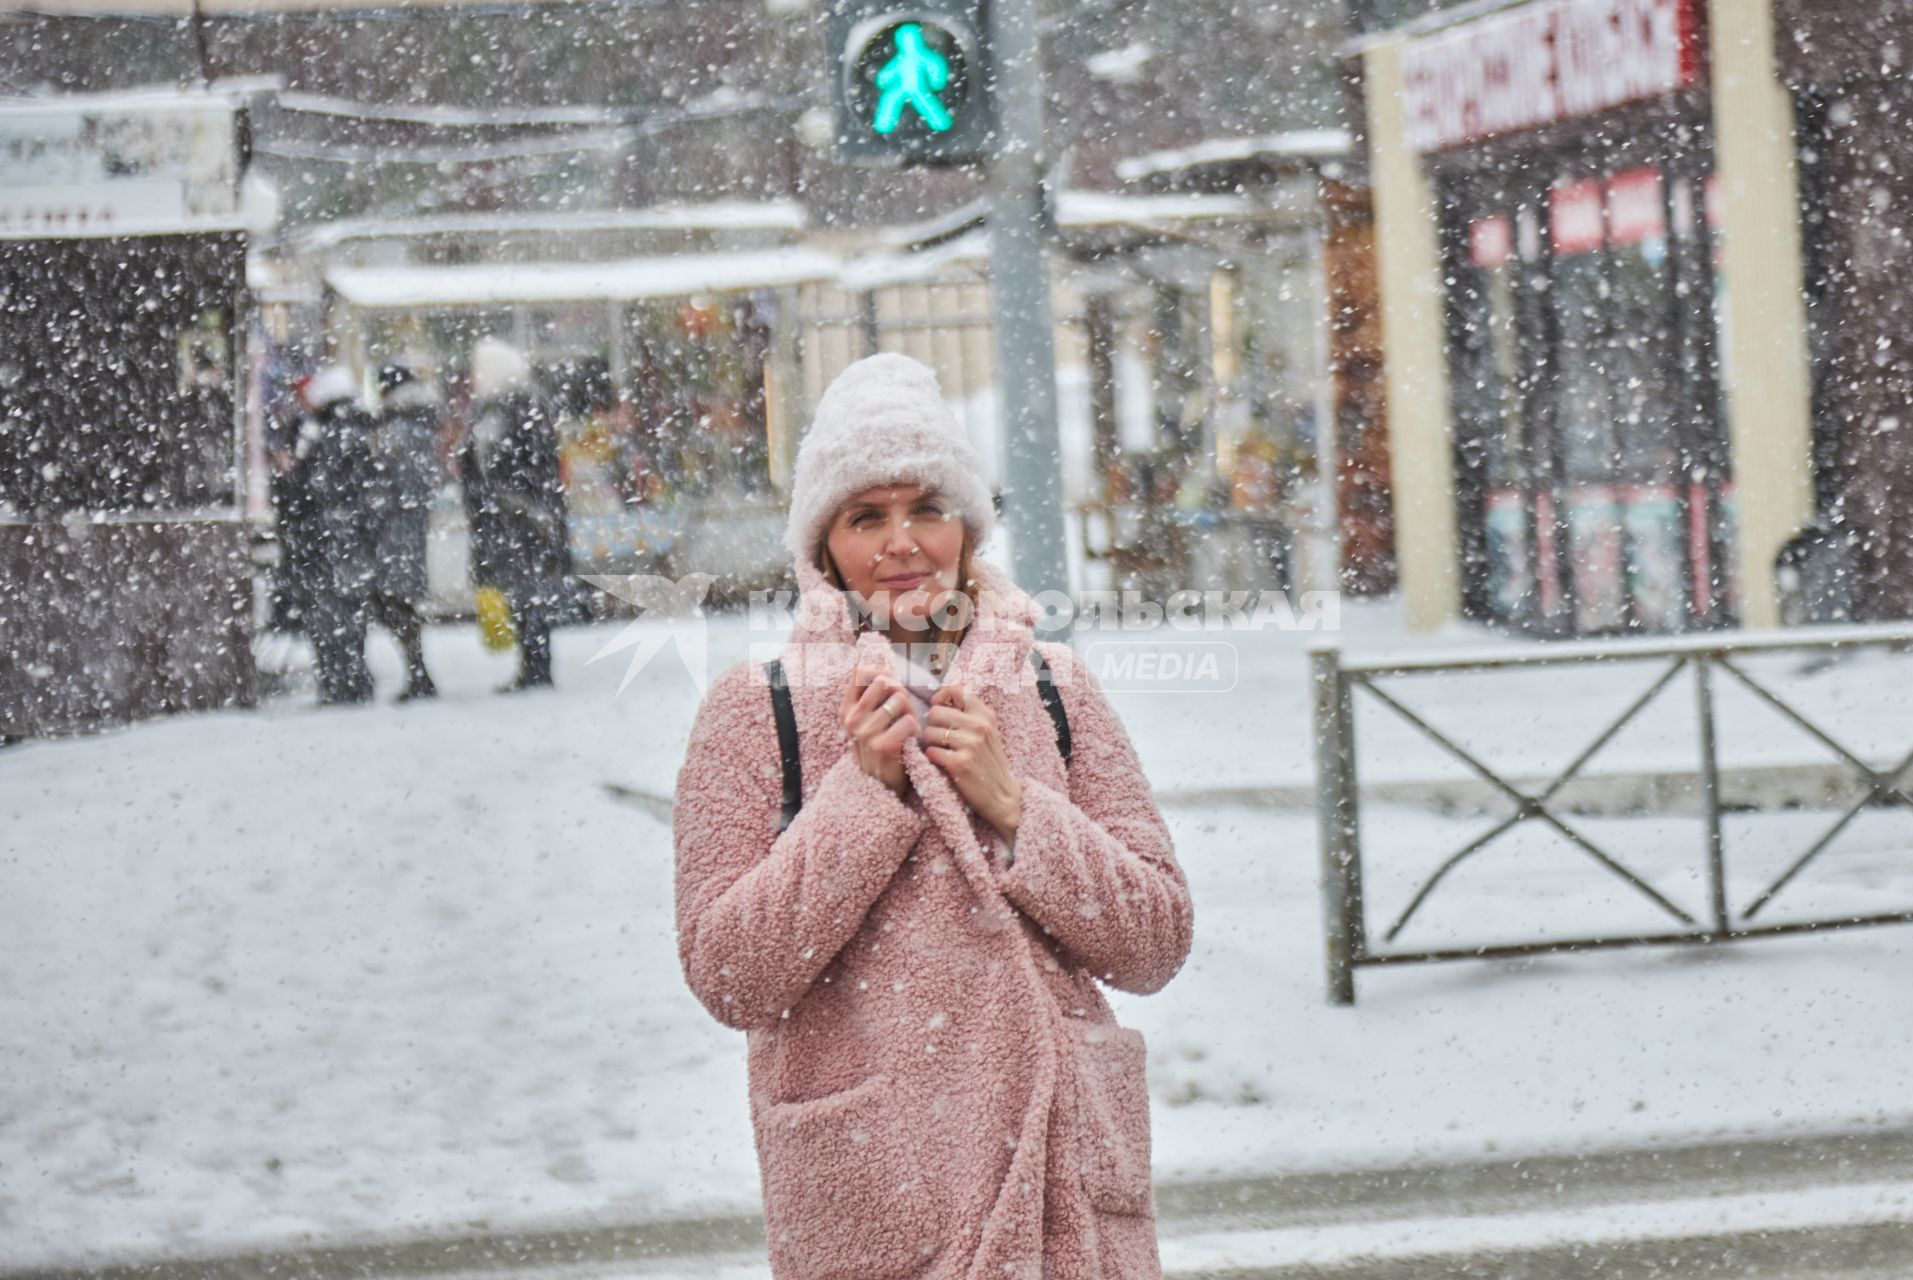 Пермь. Девушка на улице во время снегопада.